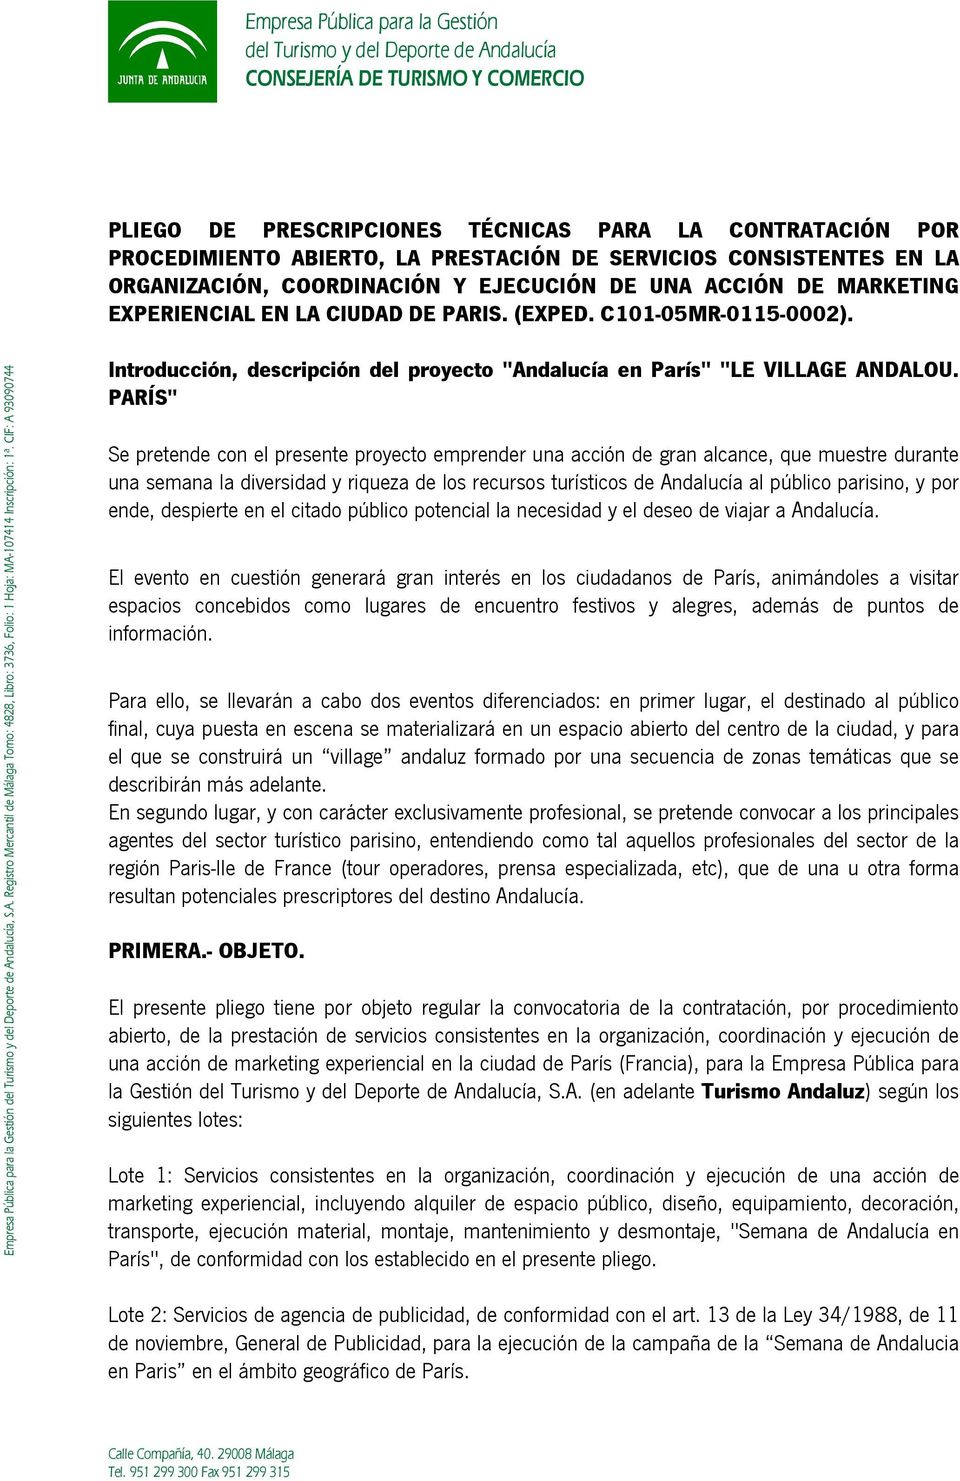 Empresa Pública para la Gestión del Turismo y del Deporte de Andalucía, S.A. Registro Mercantil de Málaga Tomo: 4828, Libro: 3736, Folio: 1 Hoja: MA-107414 Inscripción: 1ª.